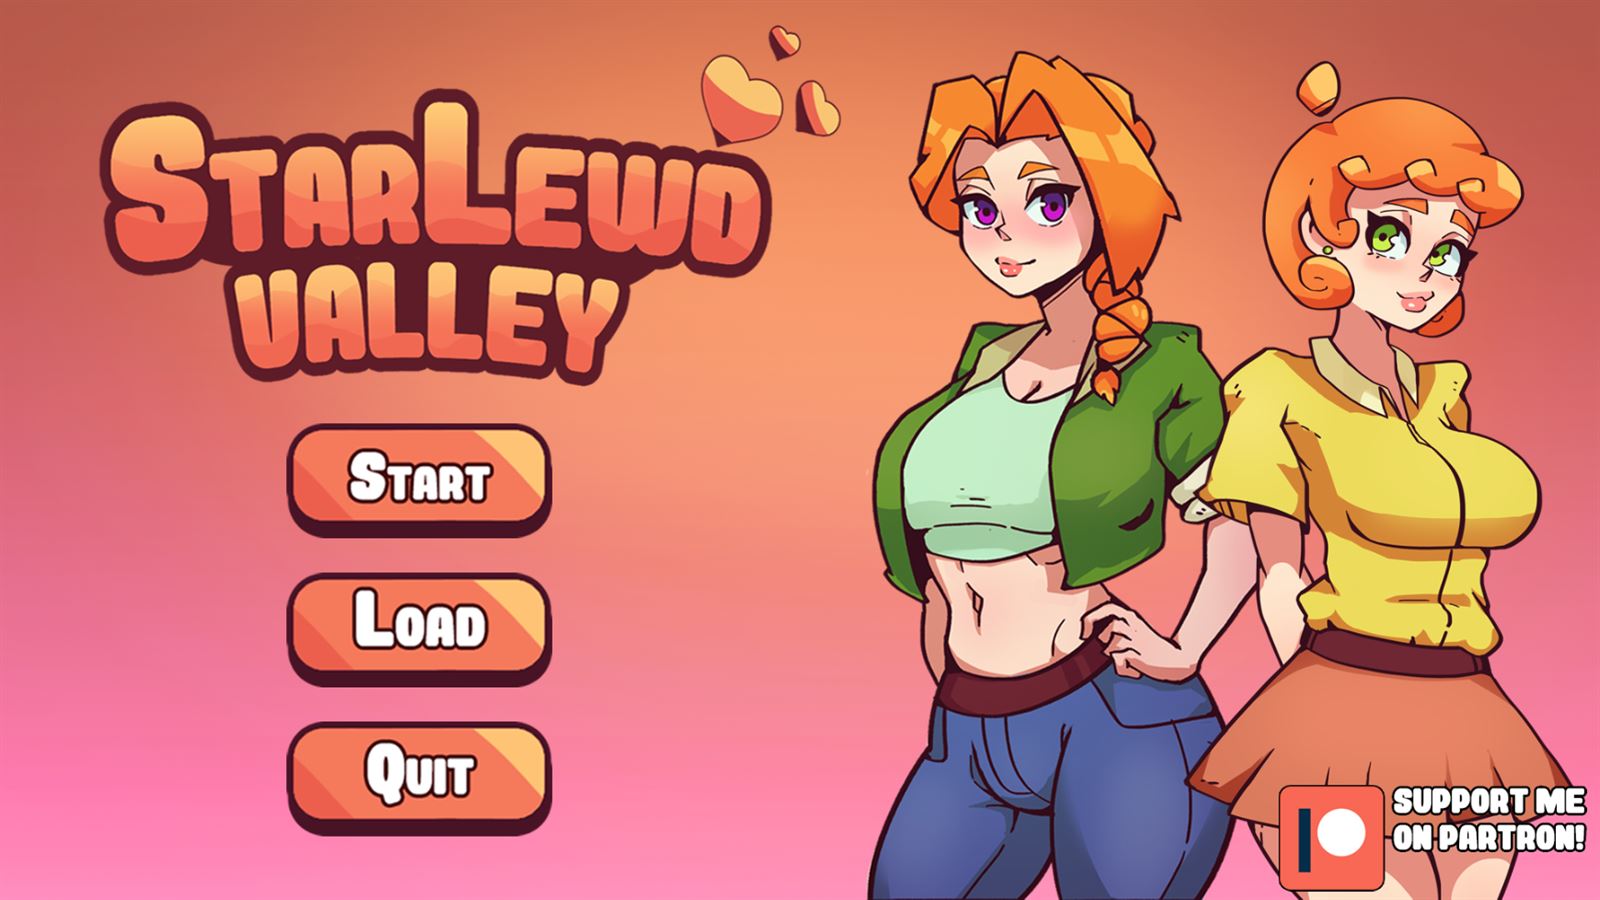 Stardew valley porn game